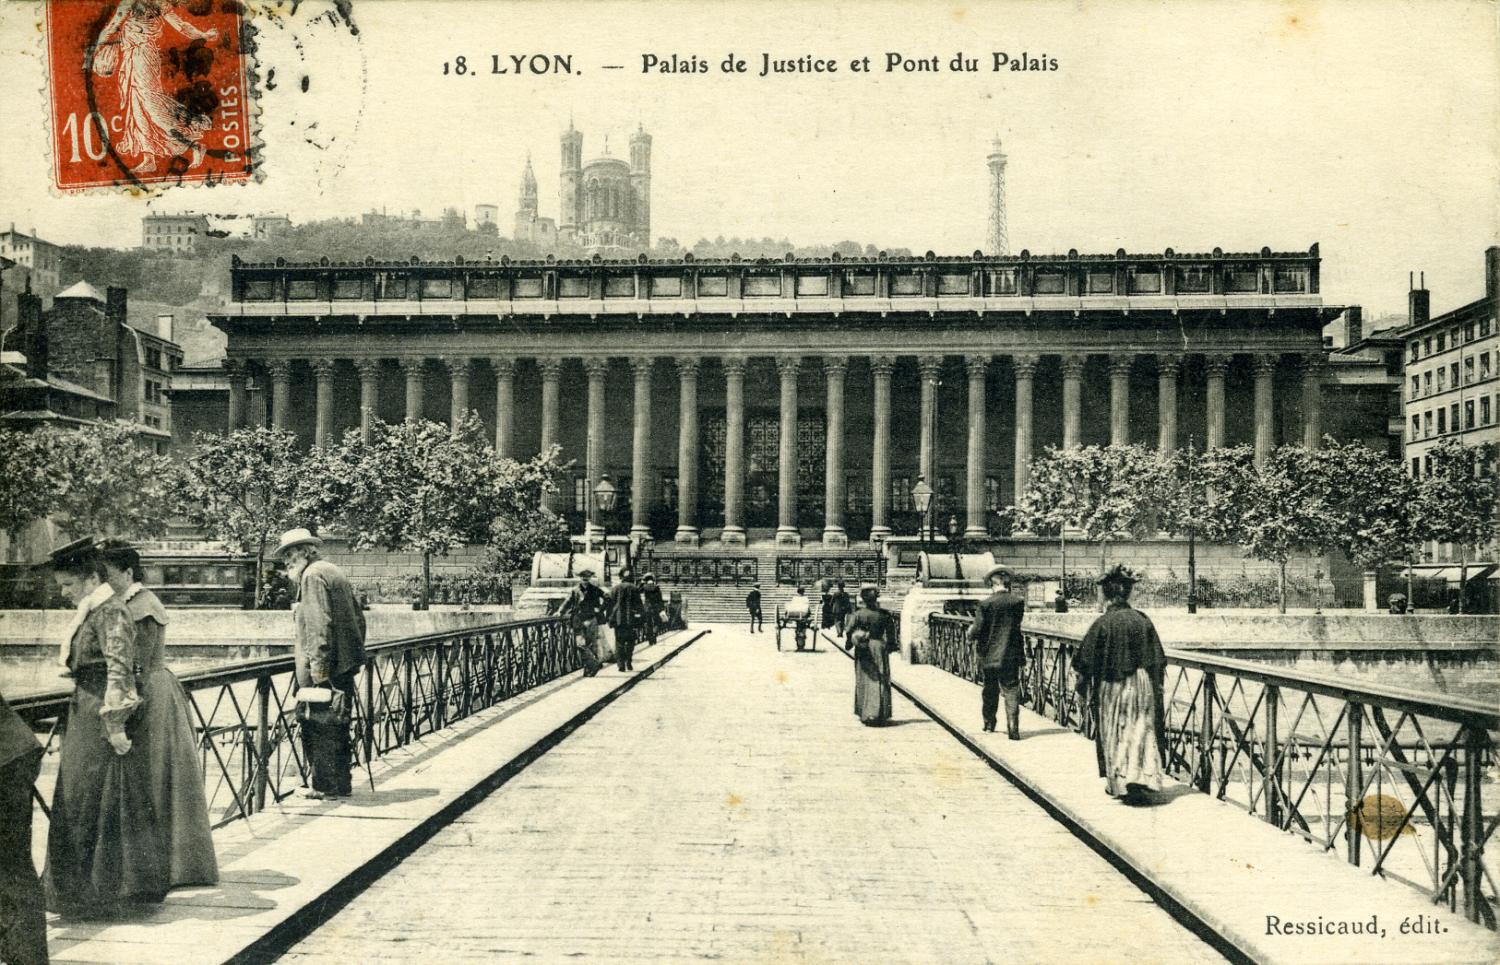 Lyon - Palais de Justice et Pont du Palais